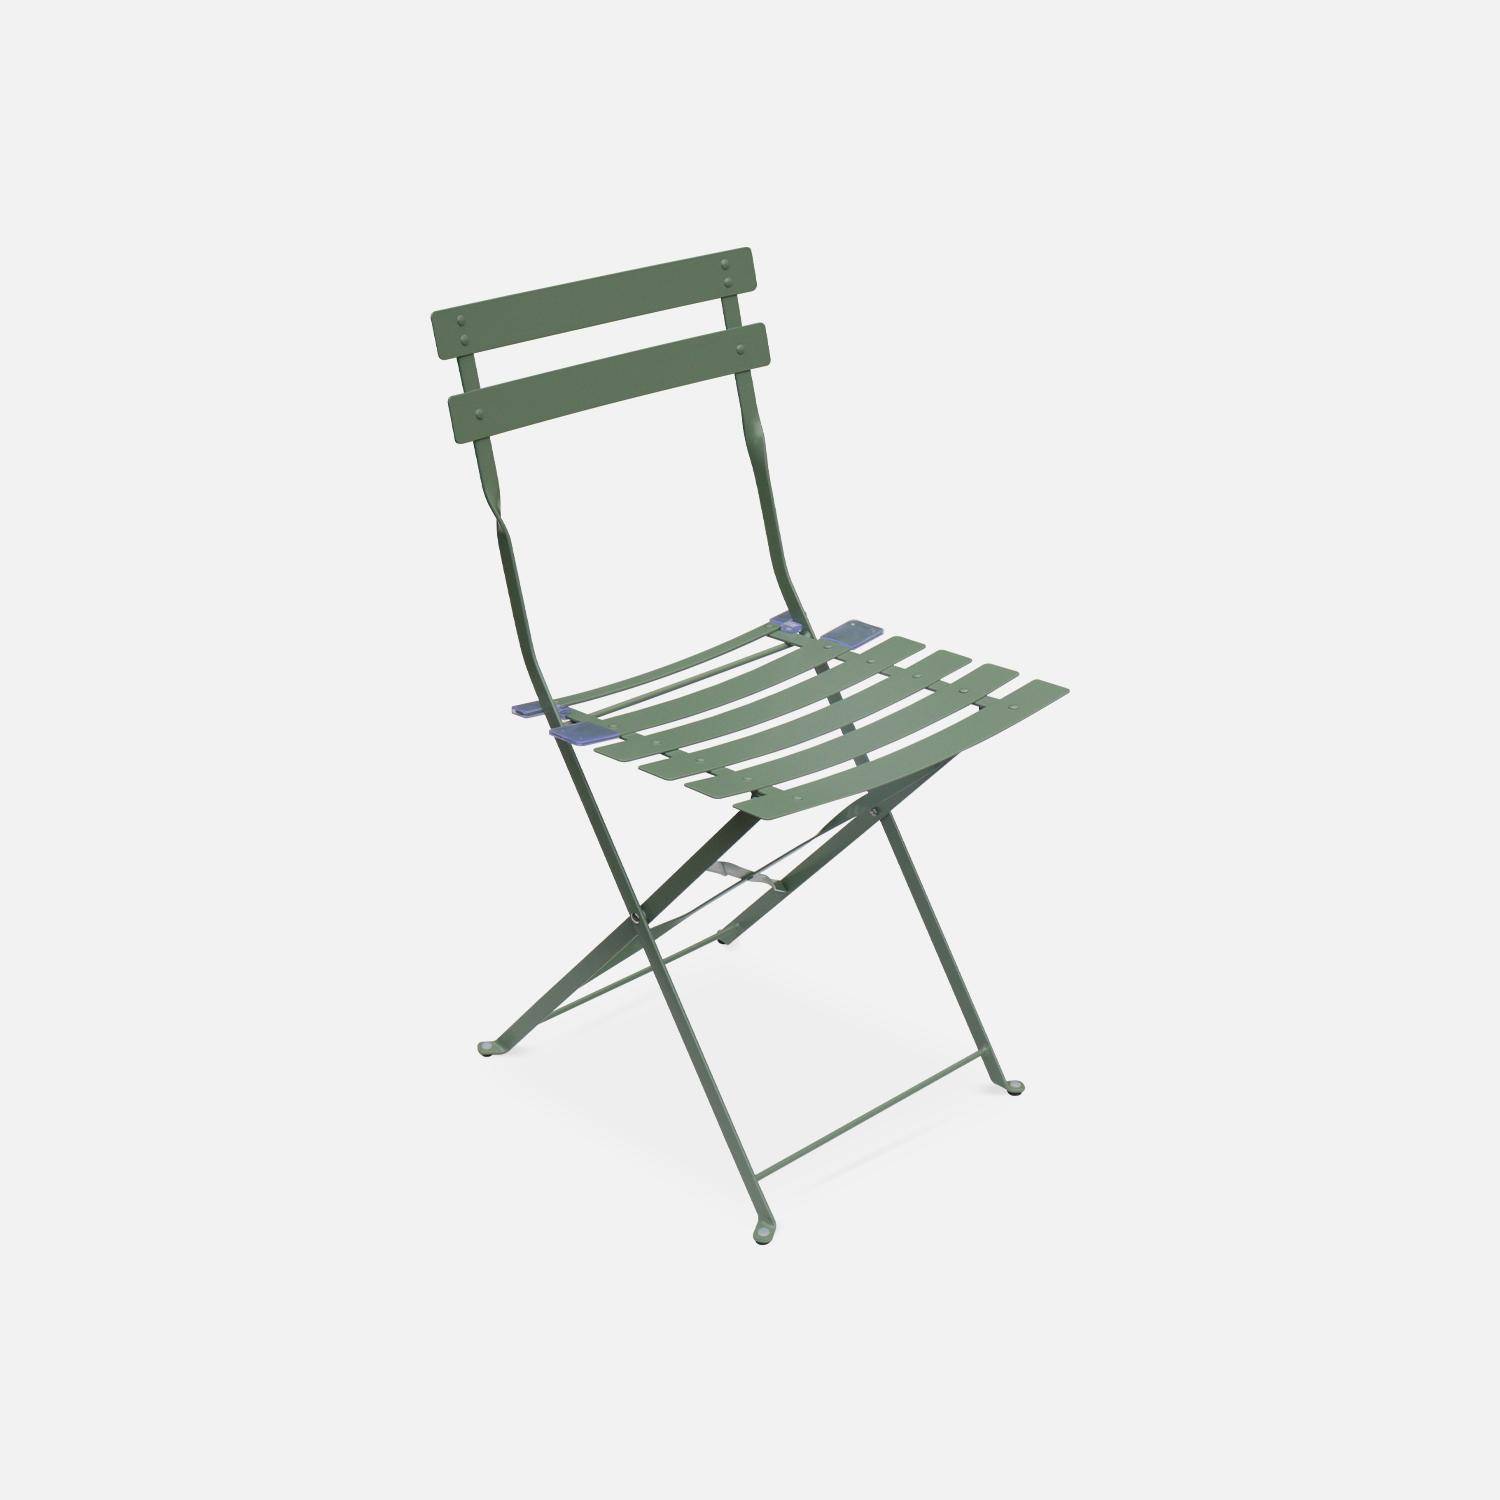 Tavolo da giardino, bar bistrot, pieghevole - modello: Emilia, rettangolare, colore: Grigio verde - Tavolo, dimensioni: 110x70cm, con quattro sedie pieghevoli, acciaio termolaccato Photo3